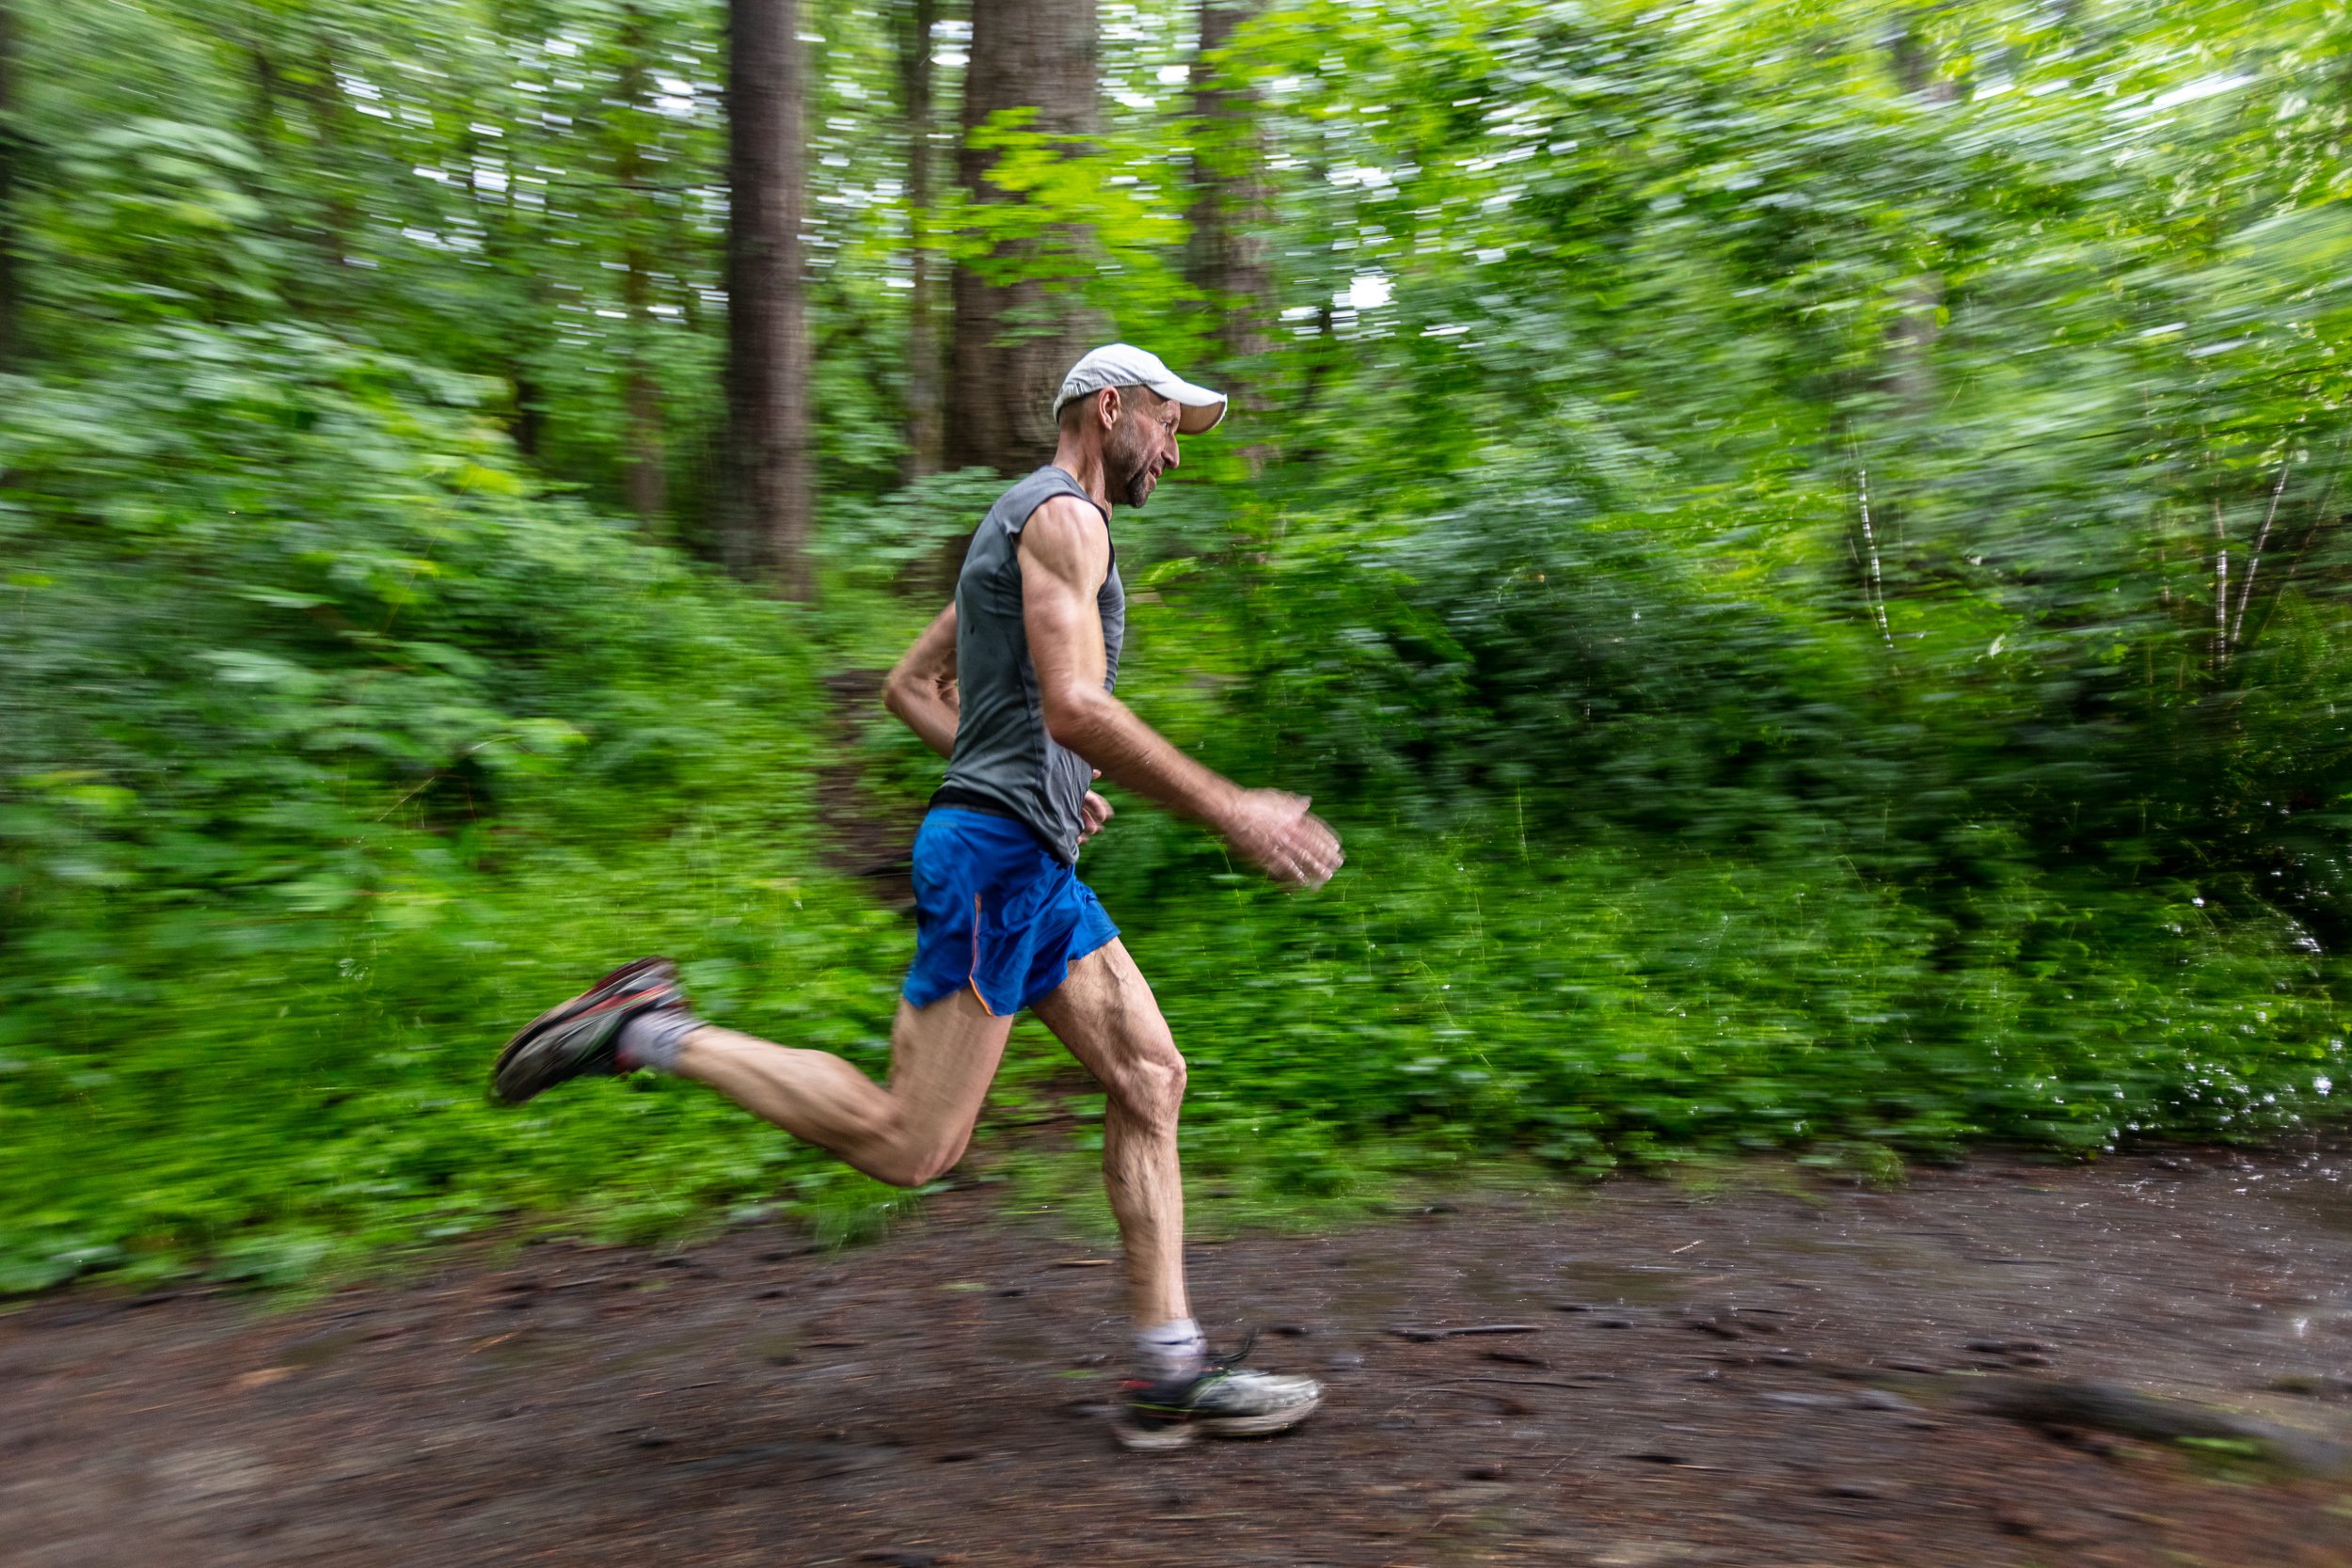 blurred background photo of runner for social media.jpg